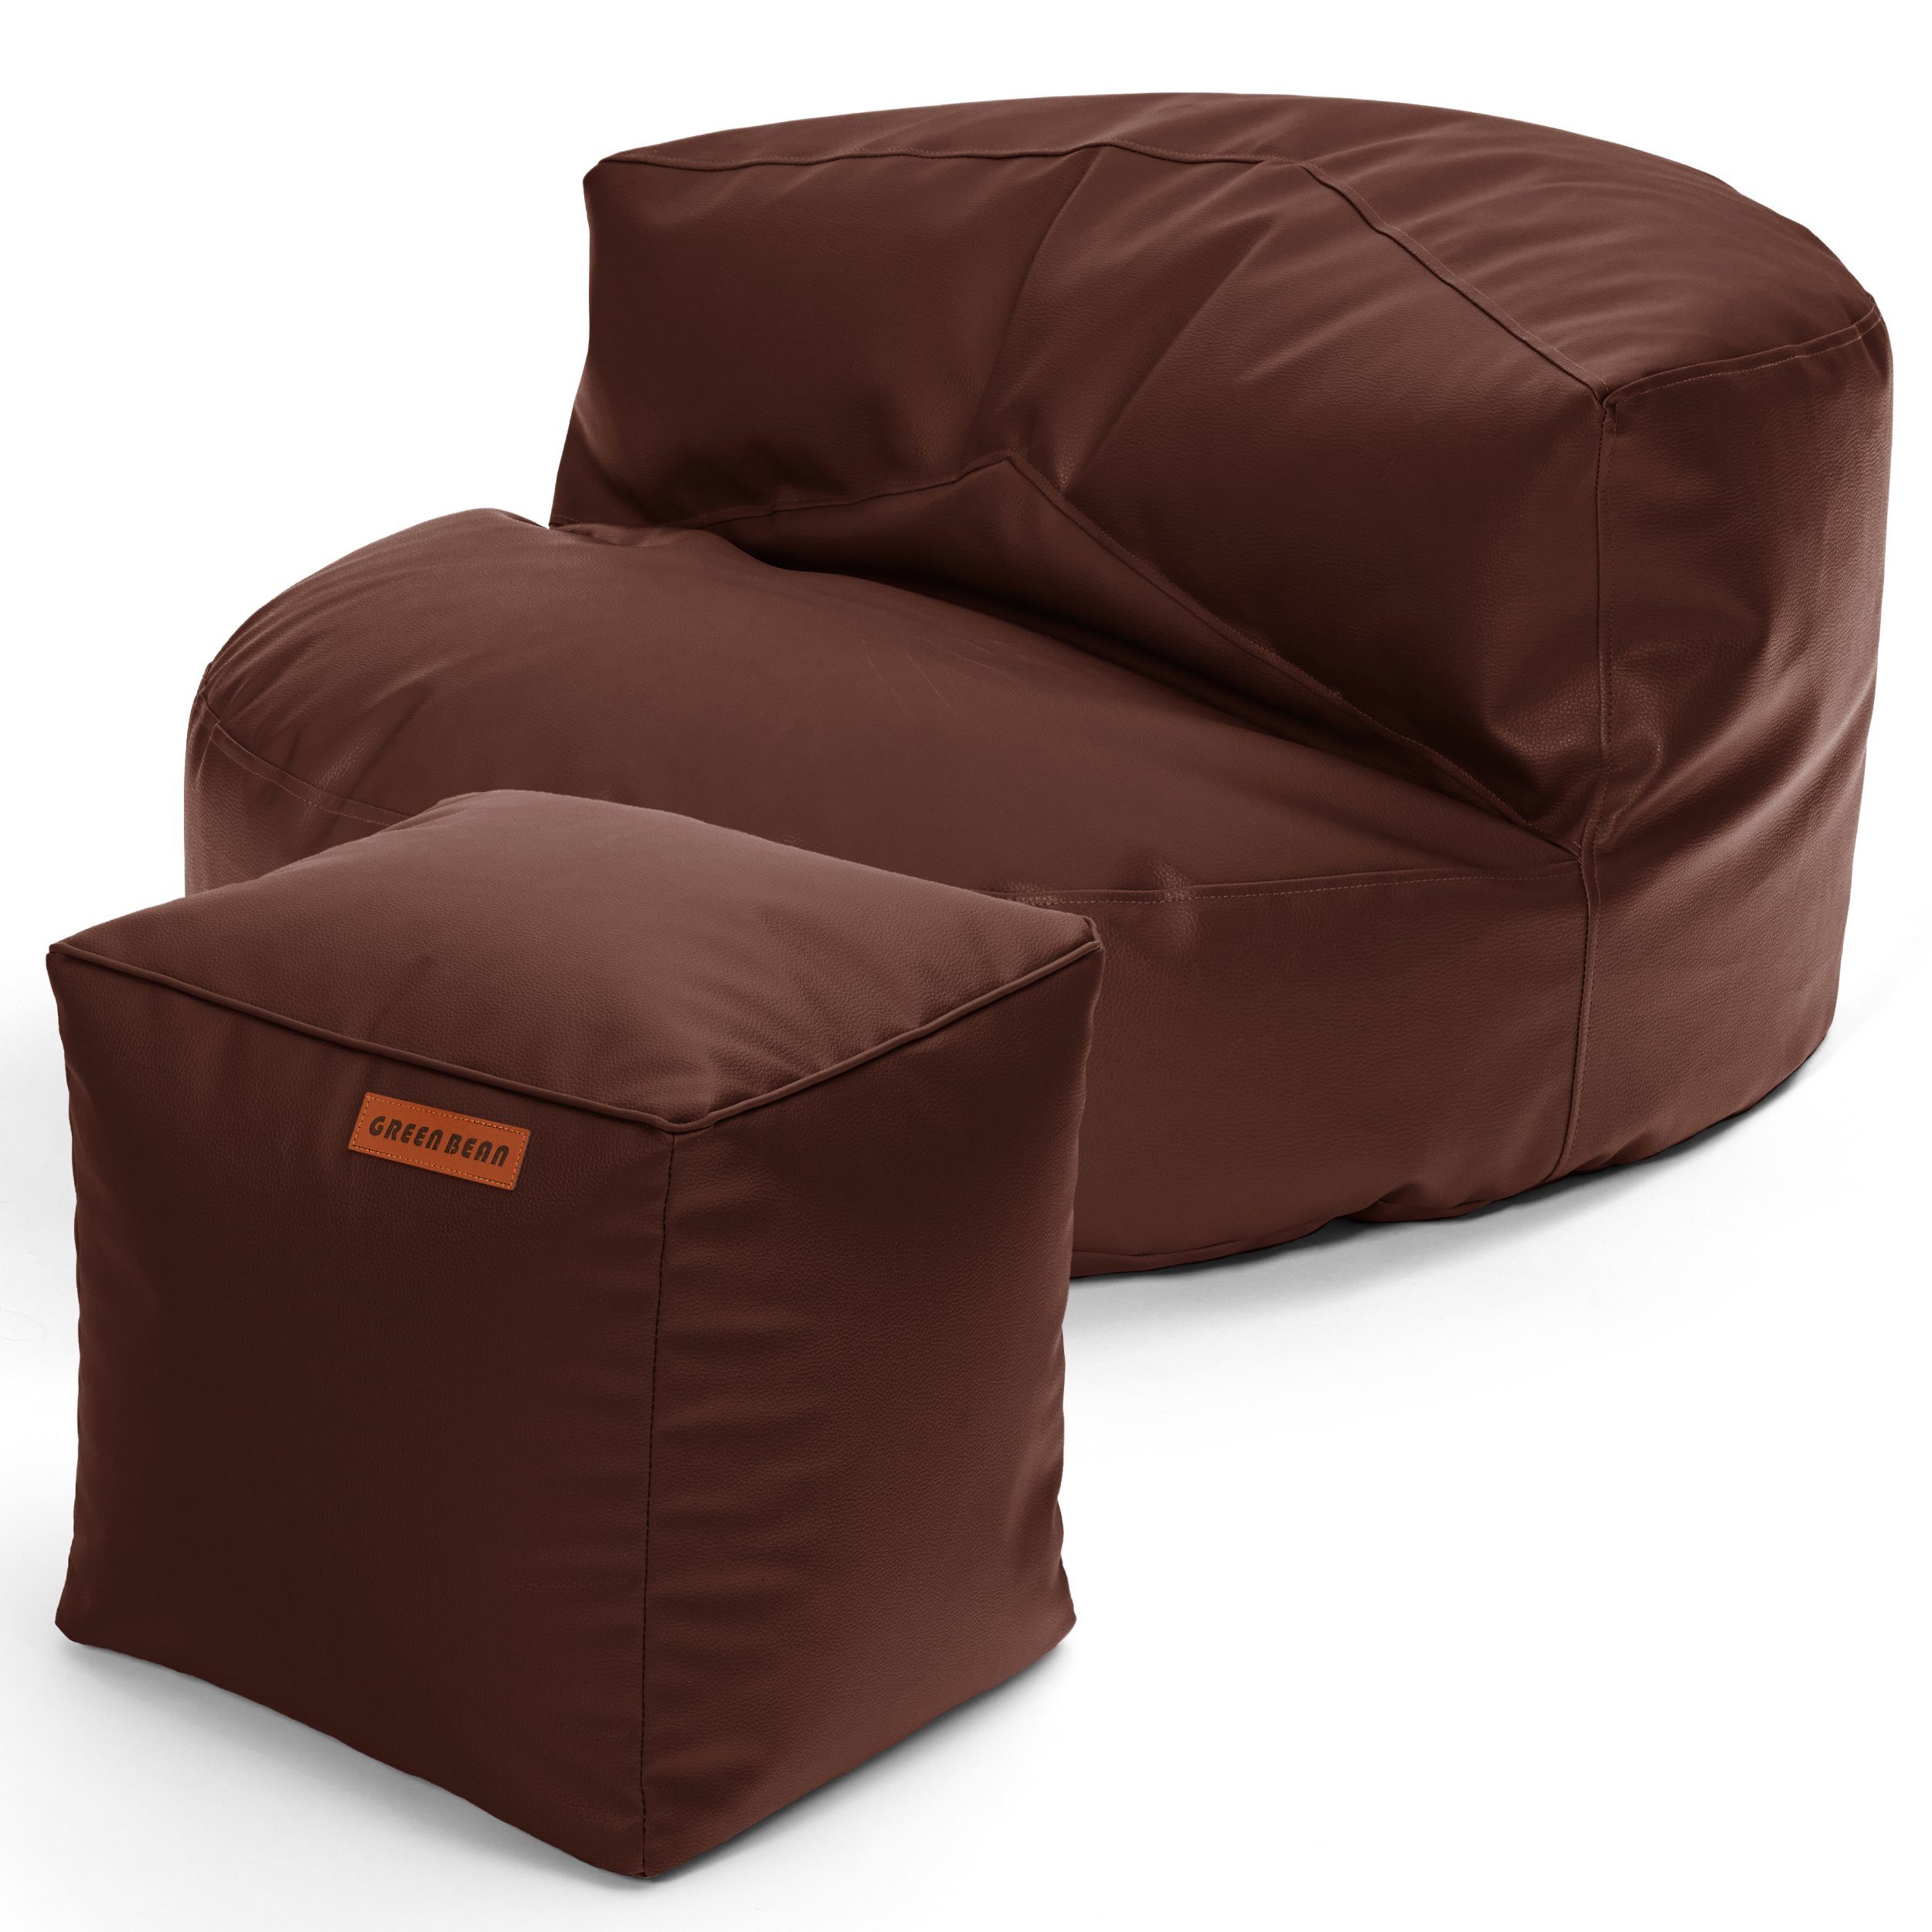 Green Bean Sitzsack Sofa + Pouf Sitzsack als Set aus Kunstleder, EPS Perlen Füllung ca. 90x45cm - Couch XXL Riesensitzsack Lounge Cube Dunkelbraun